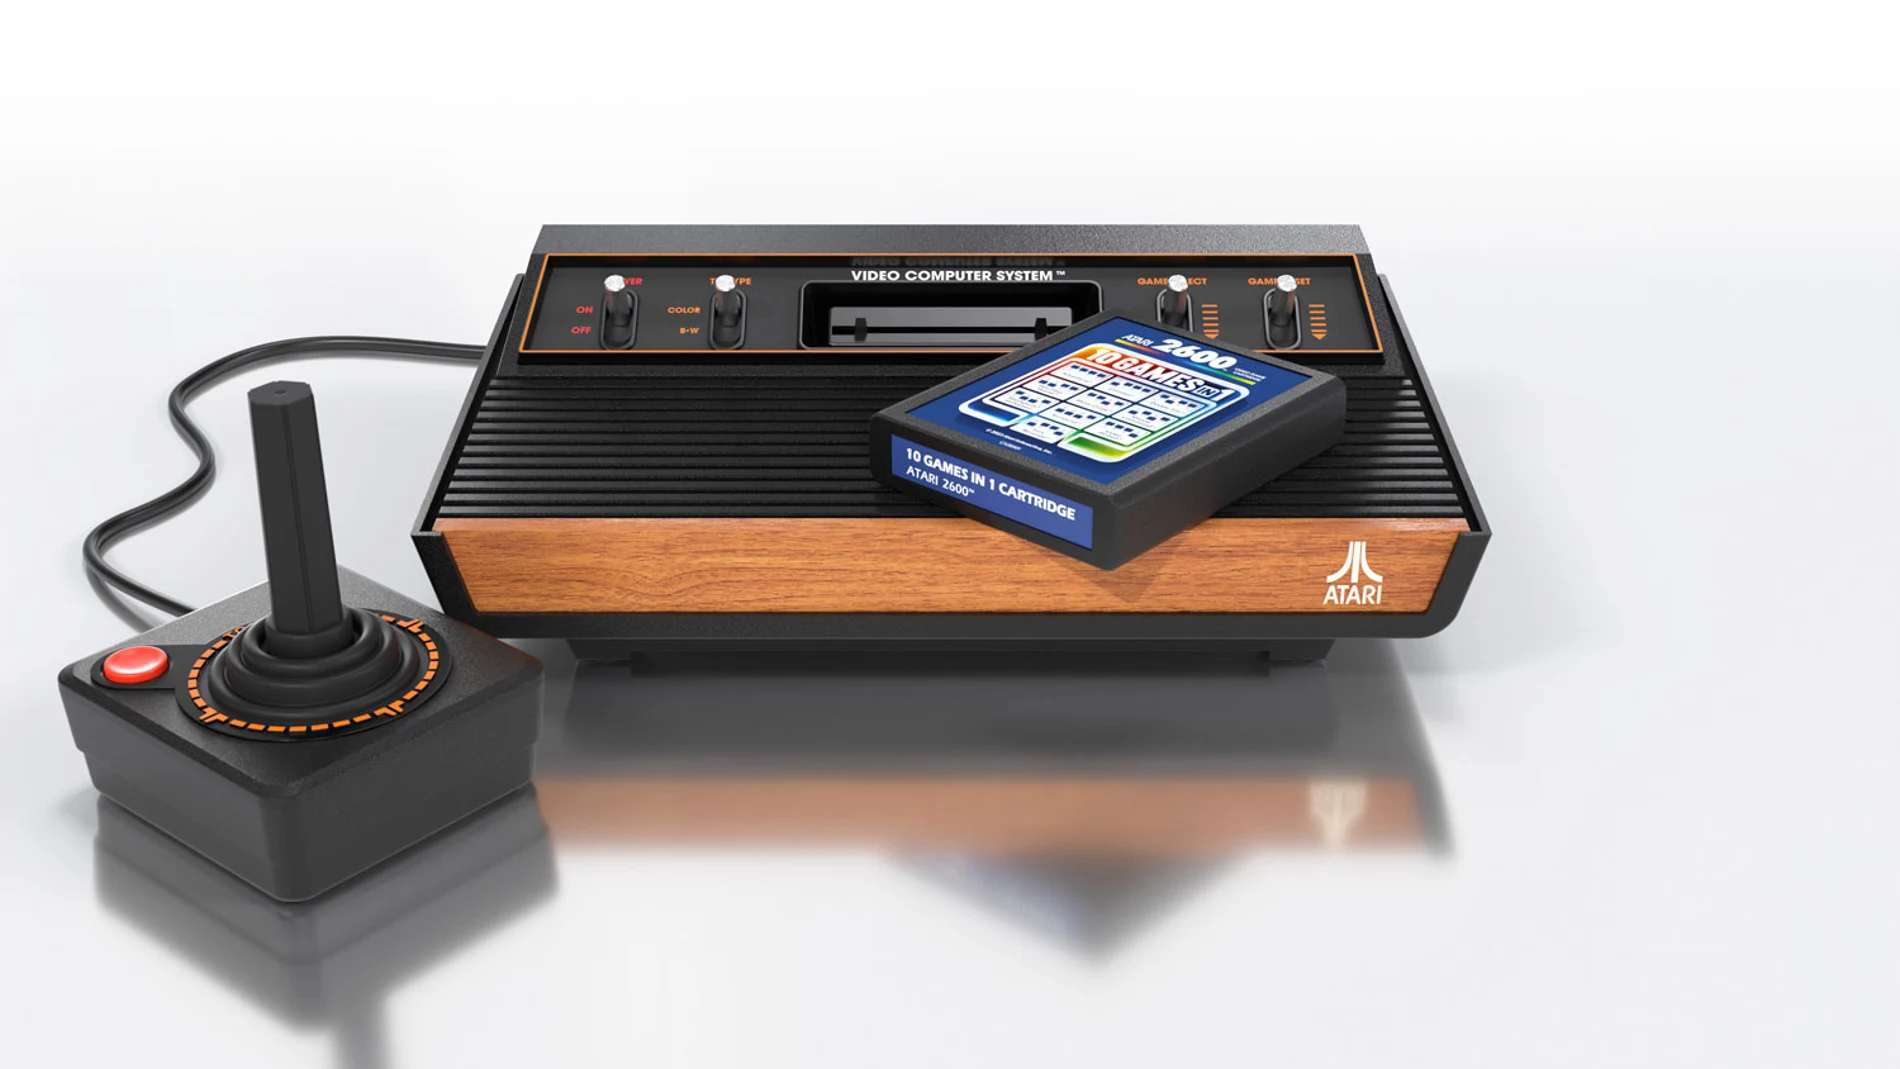 Estos son los videojuegos clásicos que incluye la retro Atari 2600+ en formato cartucho